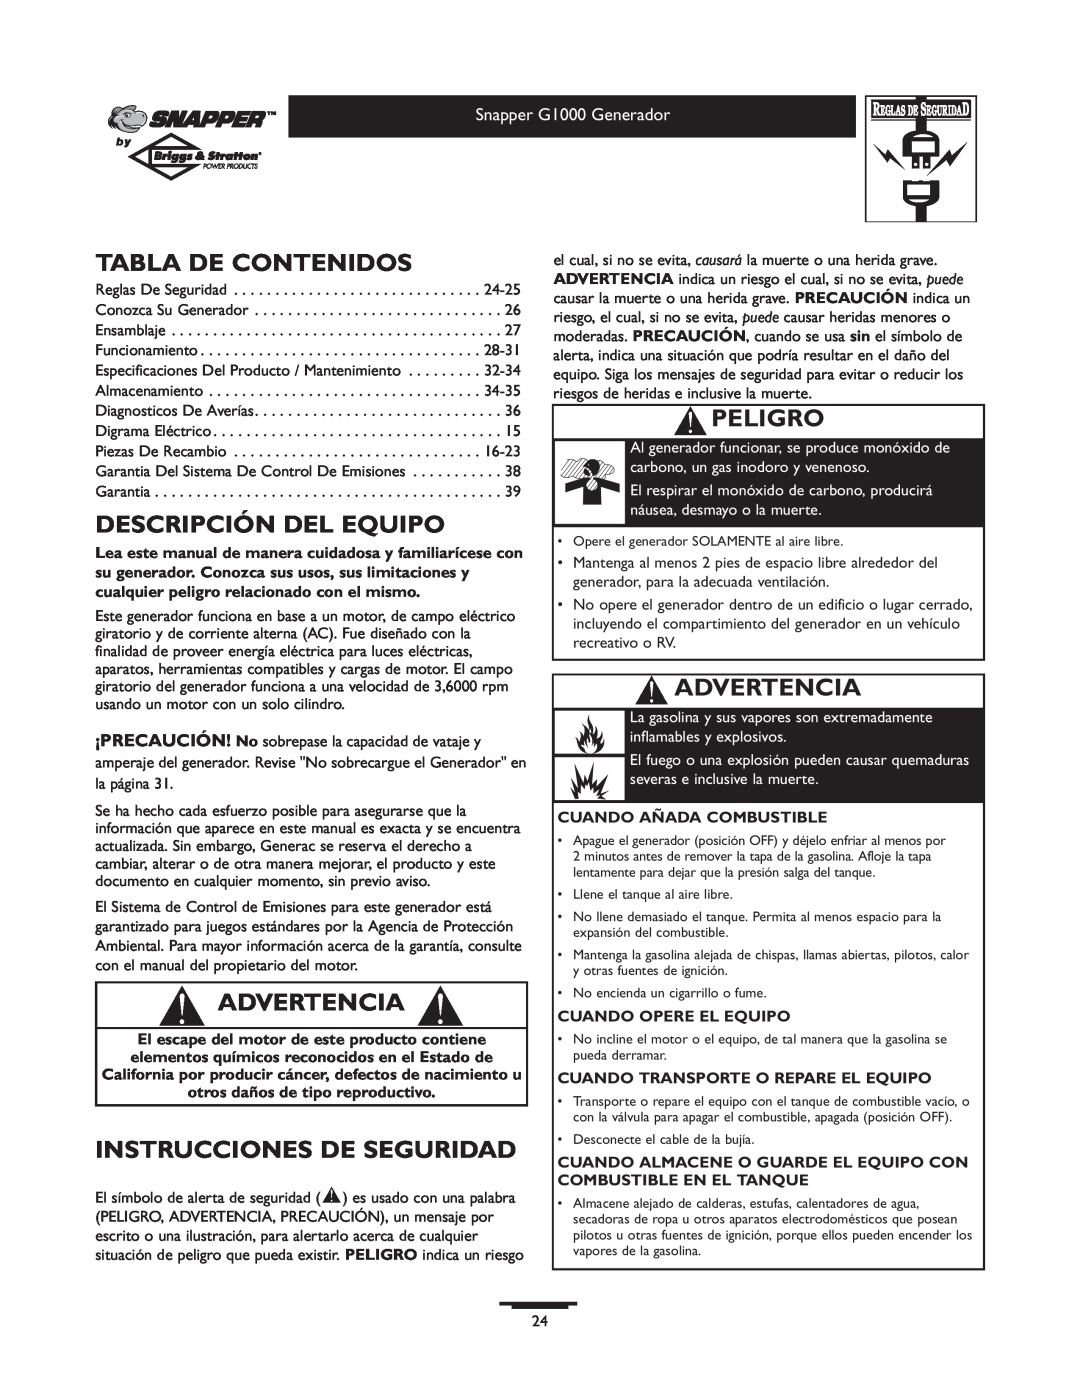 Snapper 1666-0 owner manual Tabla De Contenidos, Descripción Del Equipo, Advertencia, Instrucciones De Seguridad, Peligro 